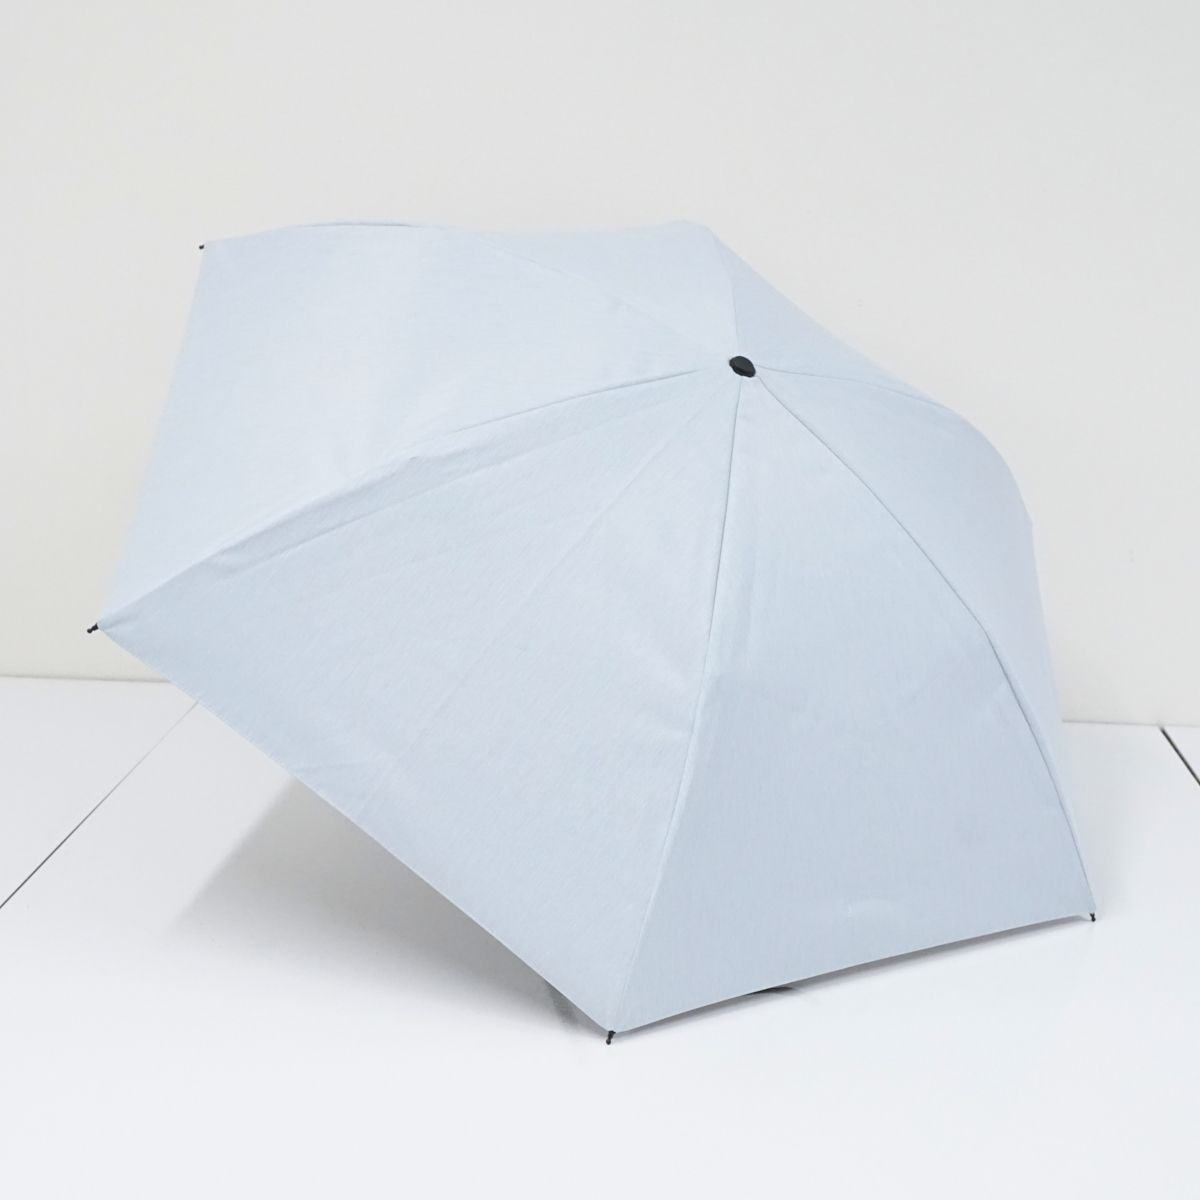 【定番人気低価】サンバリア100 完全遮光折日傘 USED美品 3段折 UV 遮熱 折りたたみ 小物